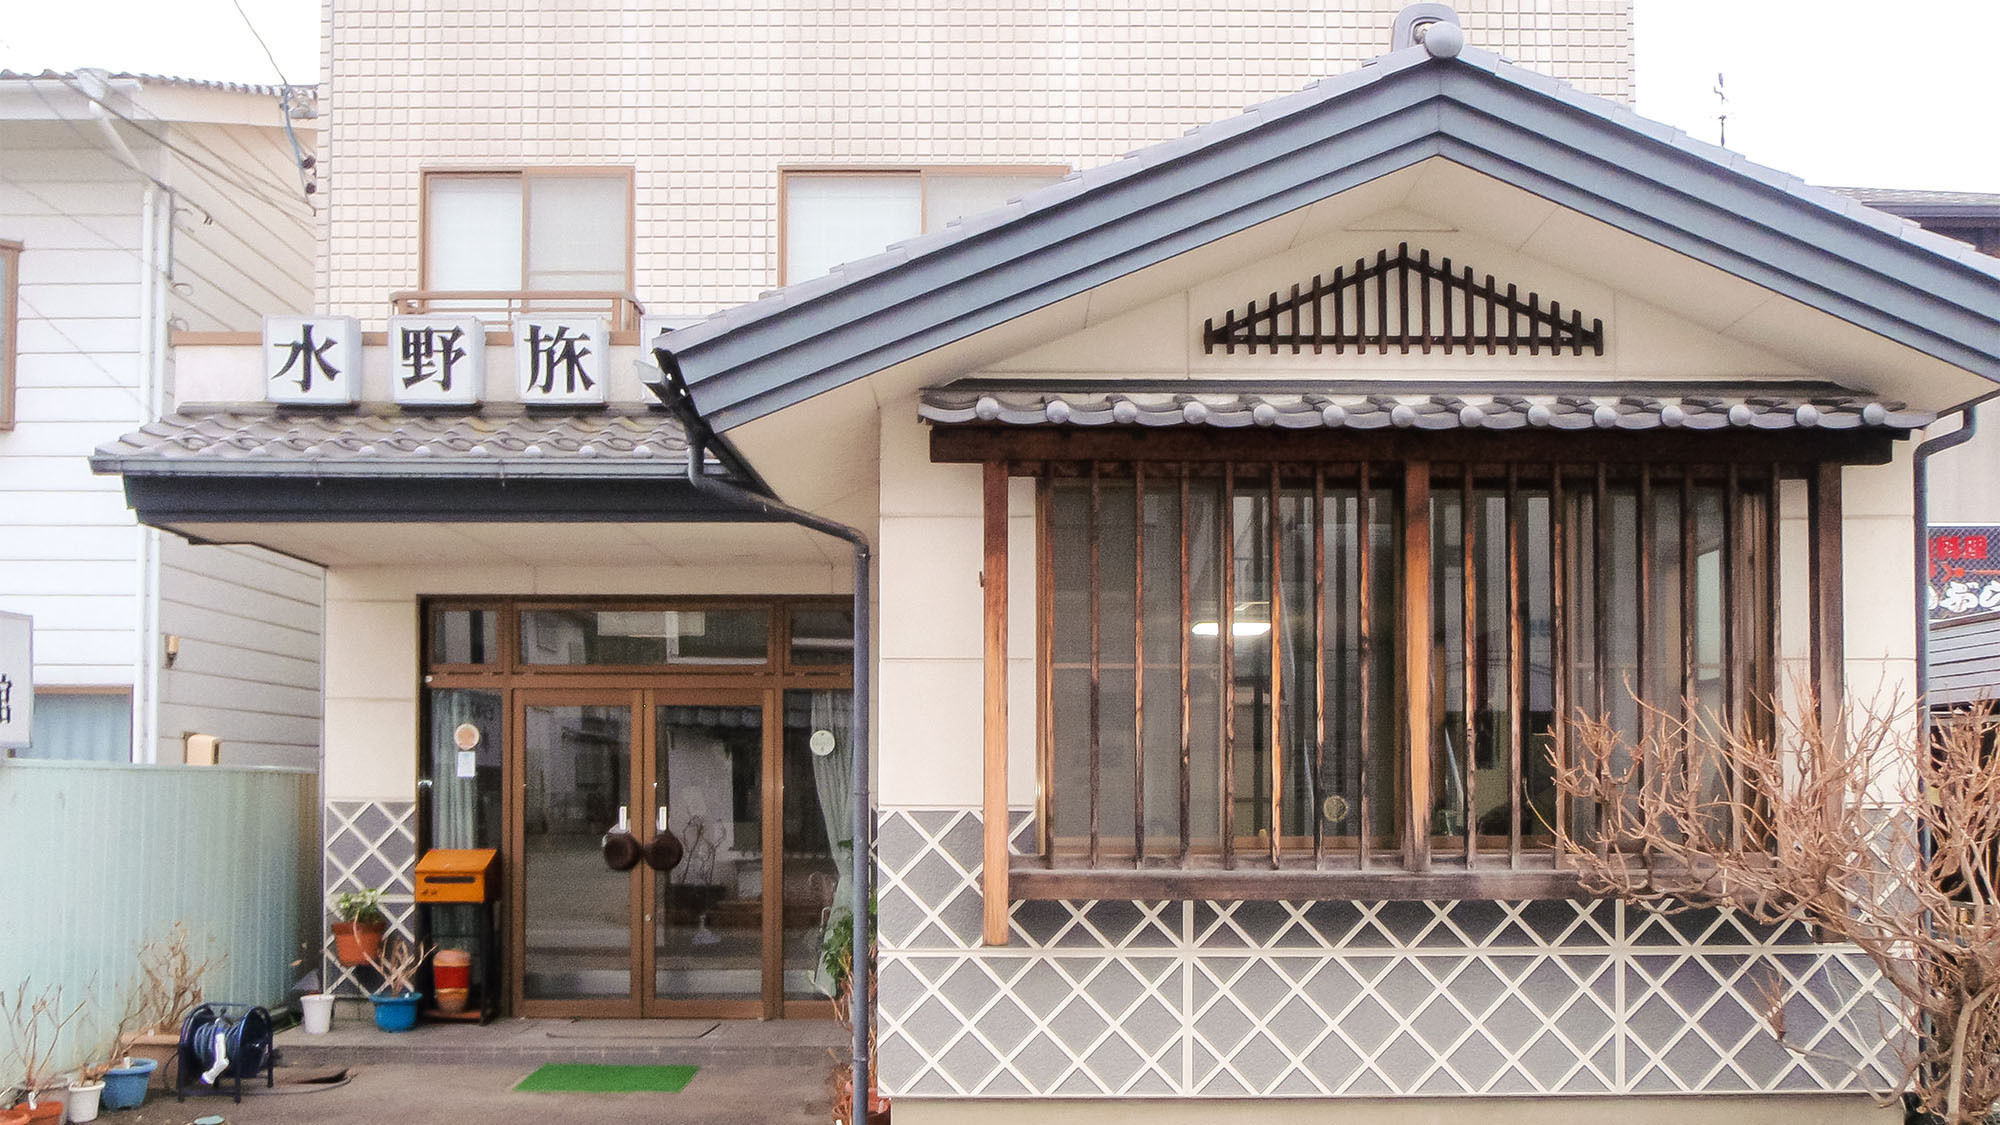 ・上田城や柳町に近く、観光に便利な施設です